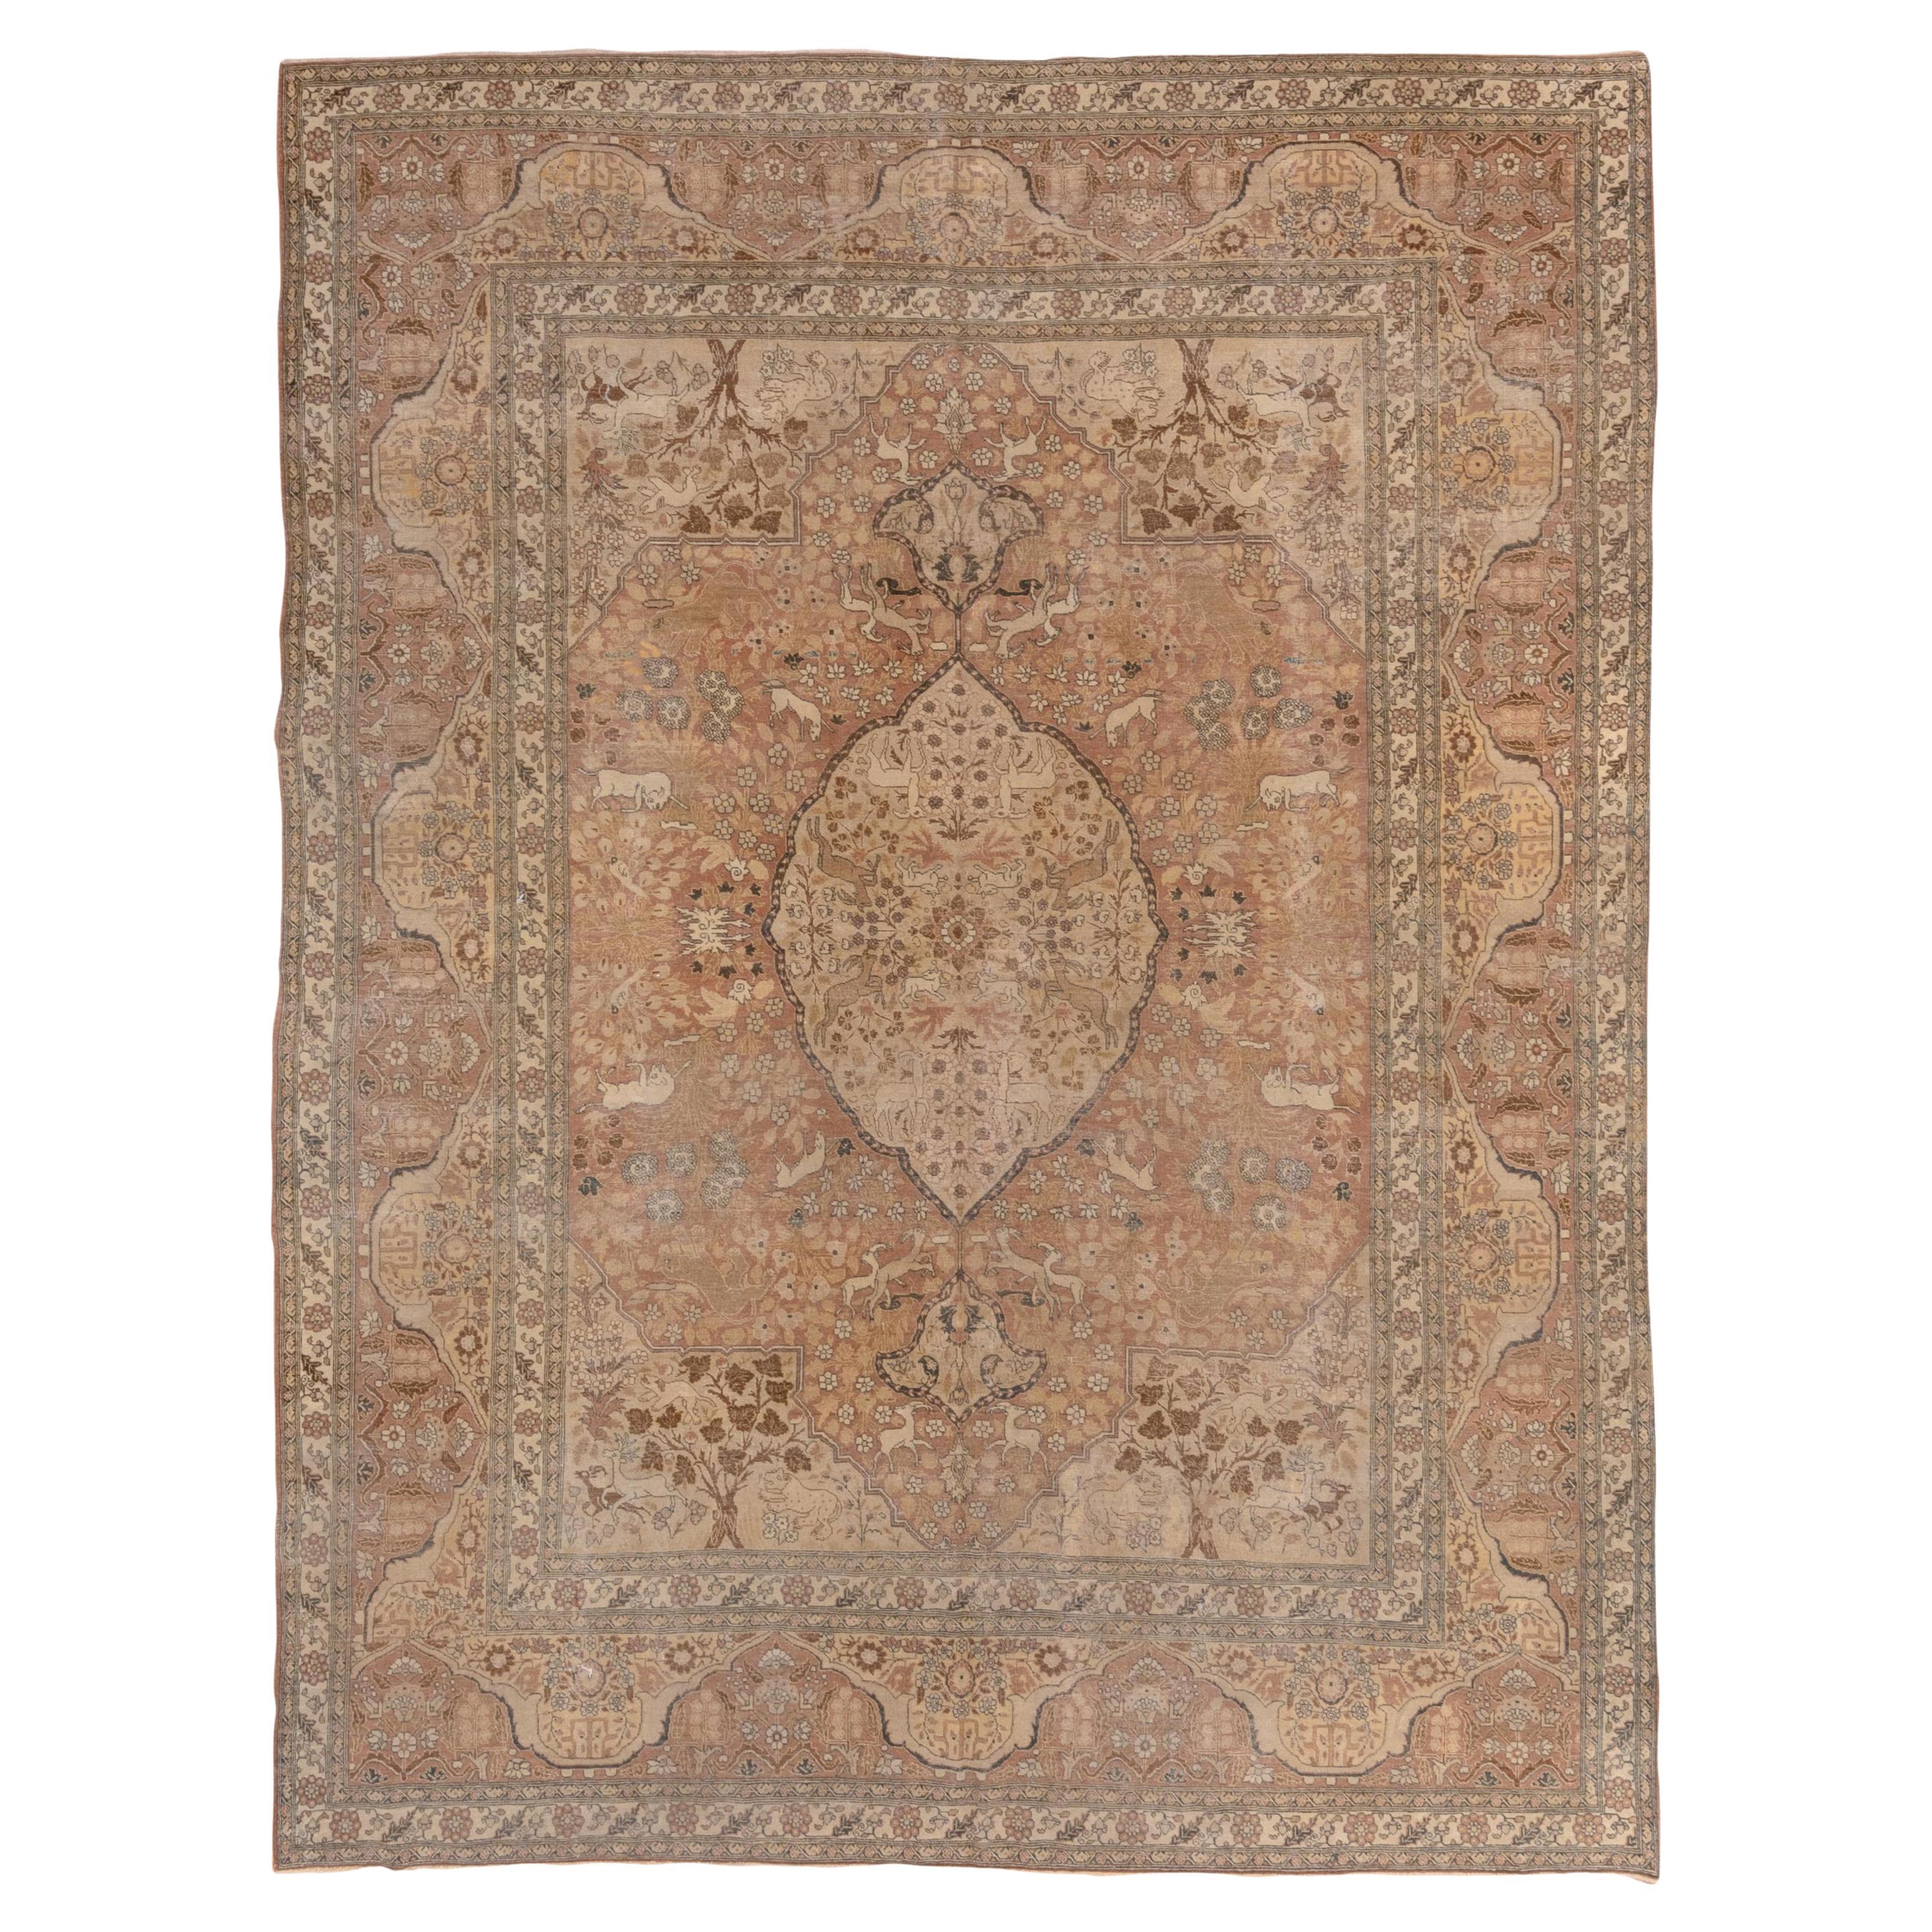 Antique Persian Tabriz Carpet, circa 1900s, Soft Palette For Sale